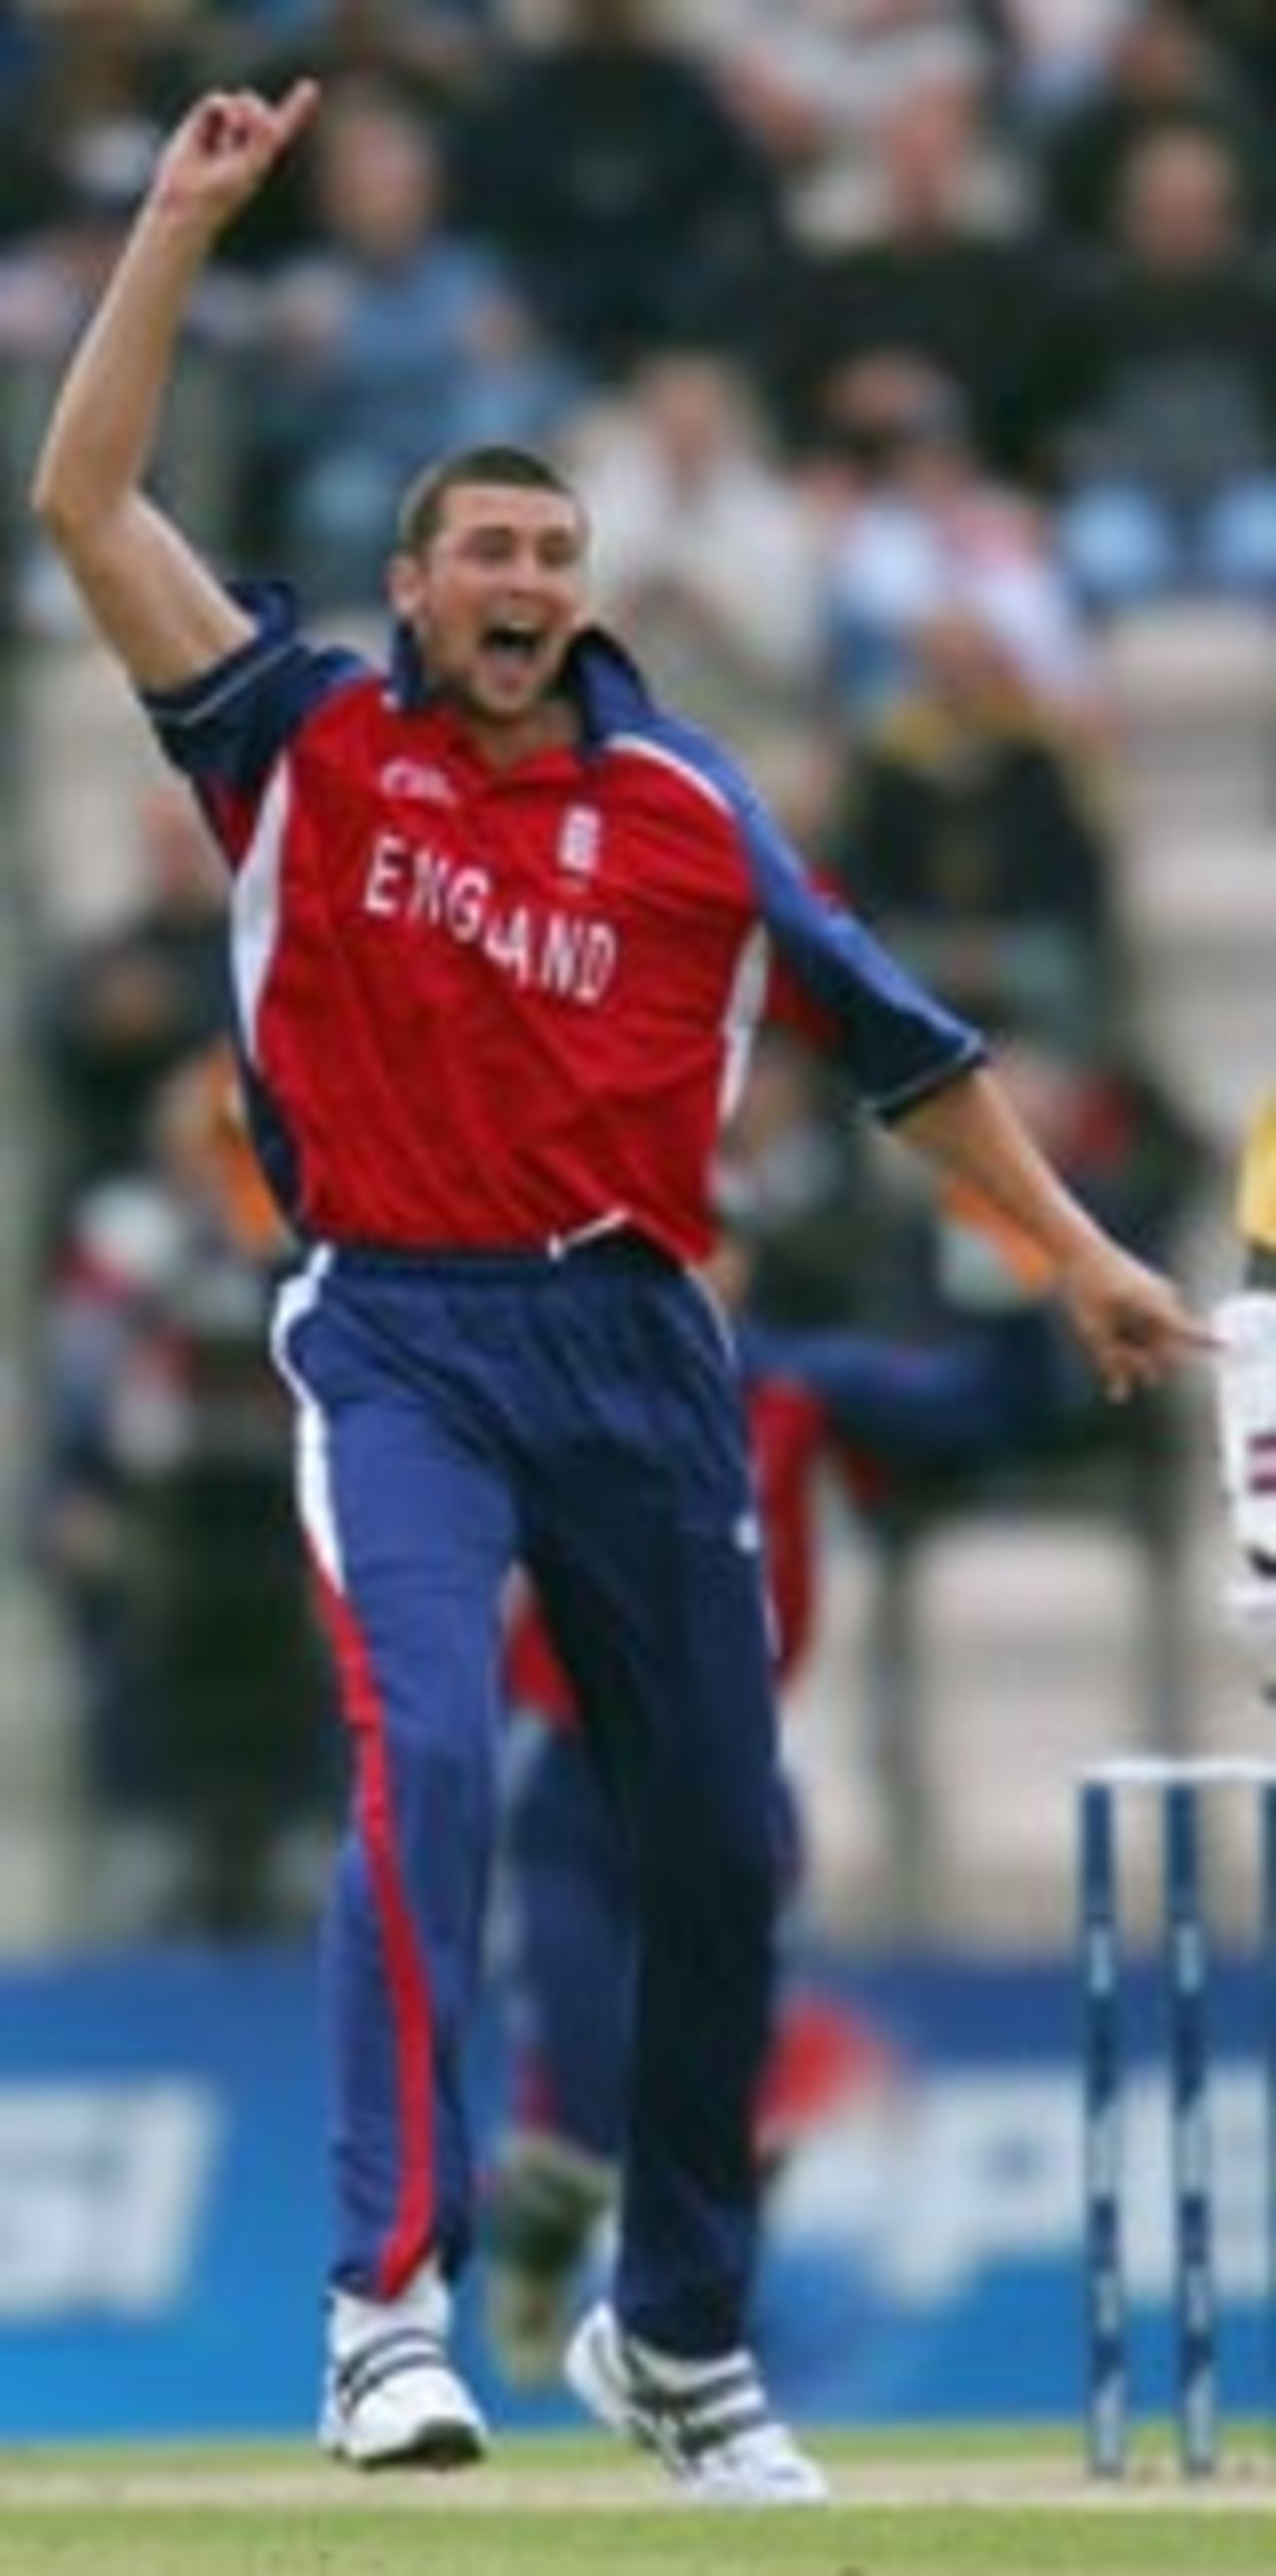 Steve Harmison appeals for a wicket, England v Sri Lanka, ICC Champions Trophy, September 18 2004